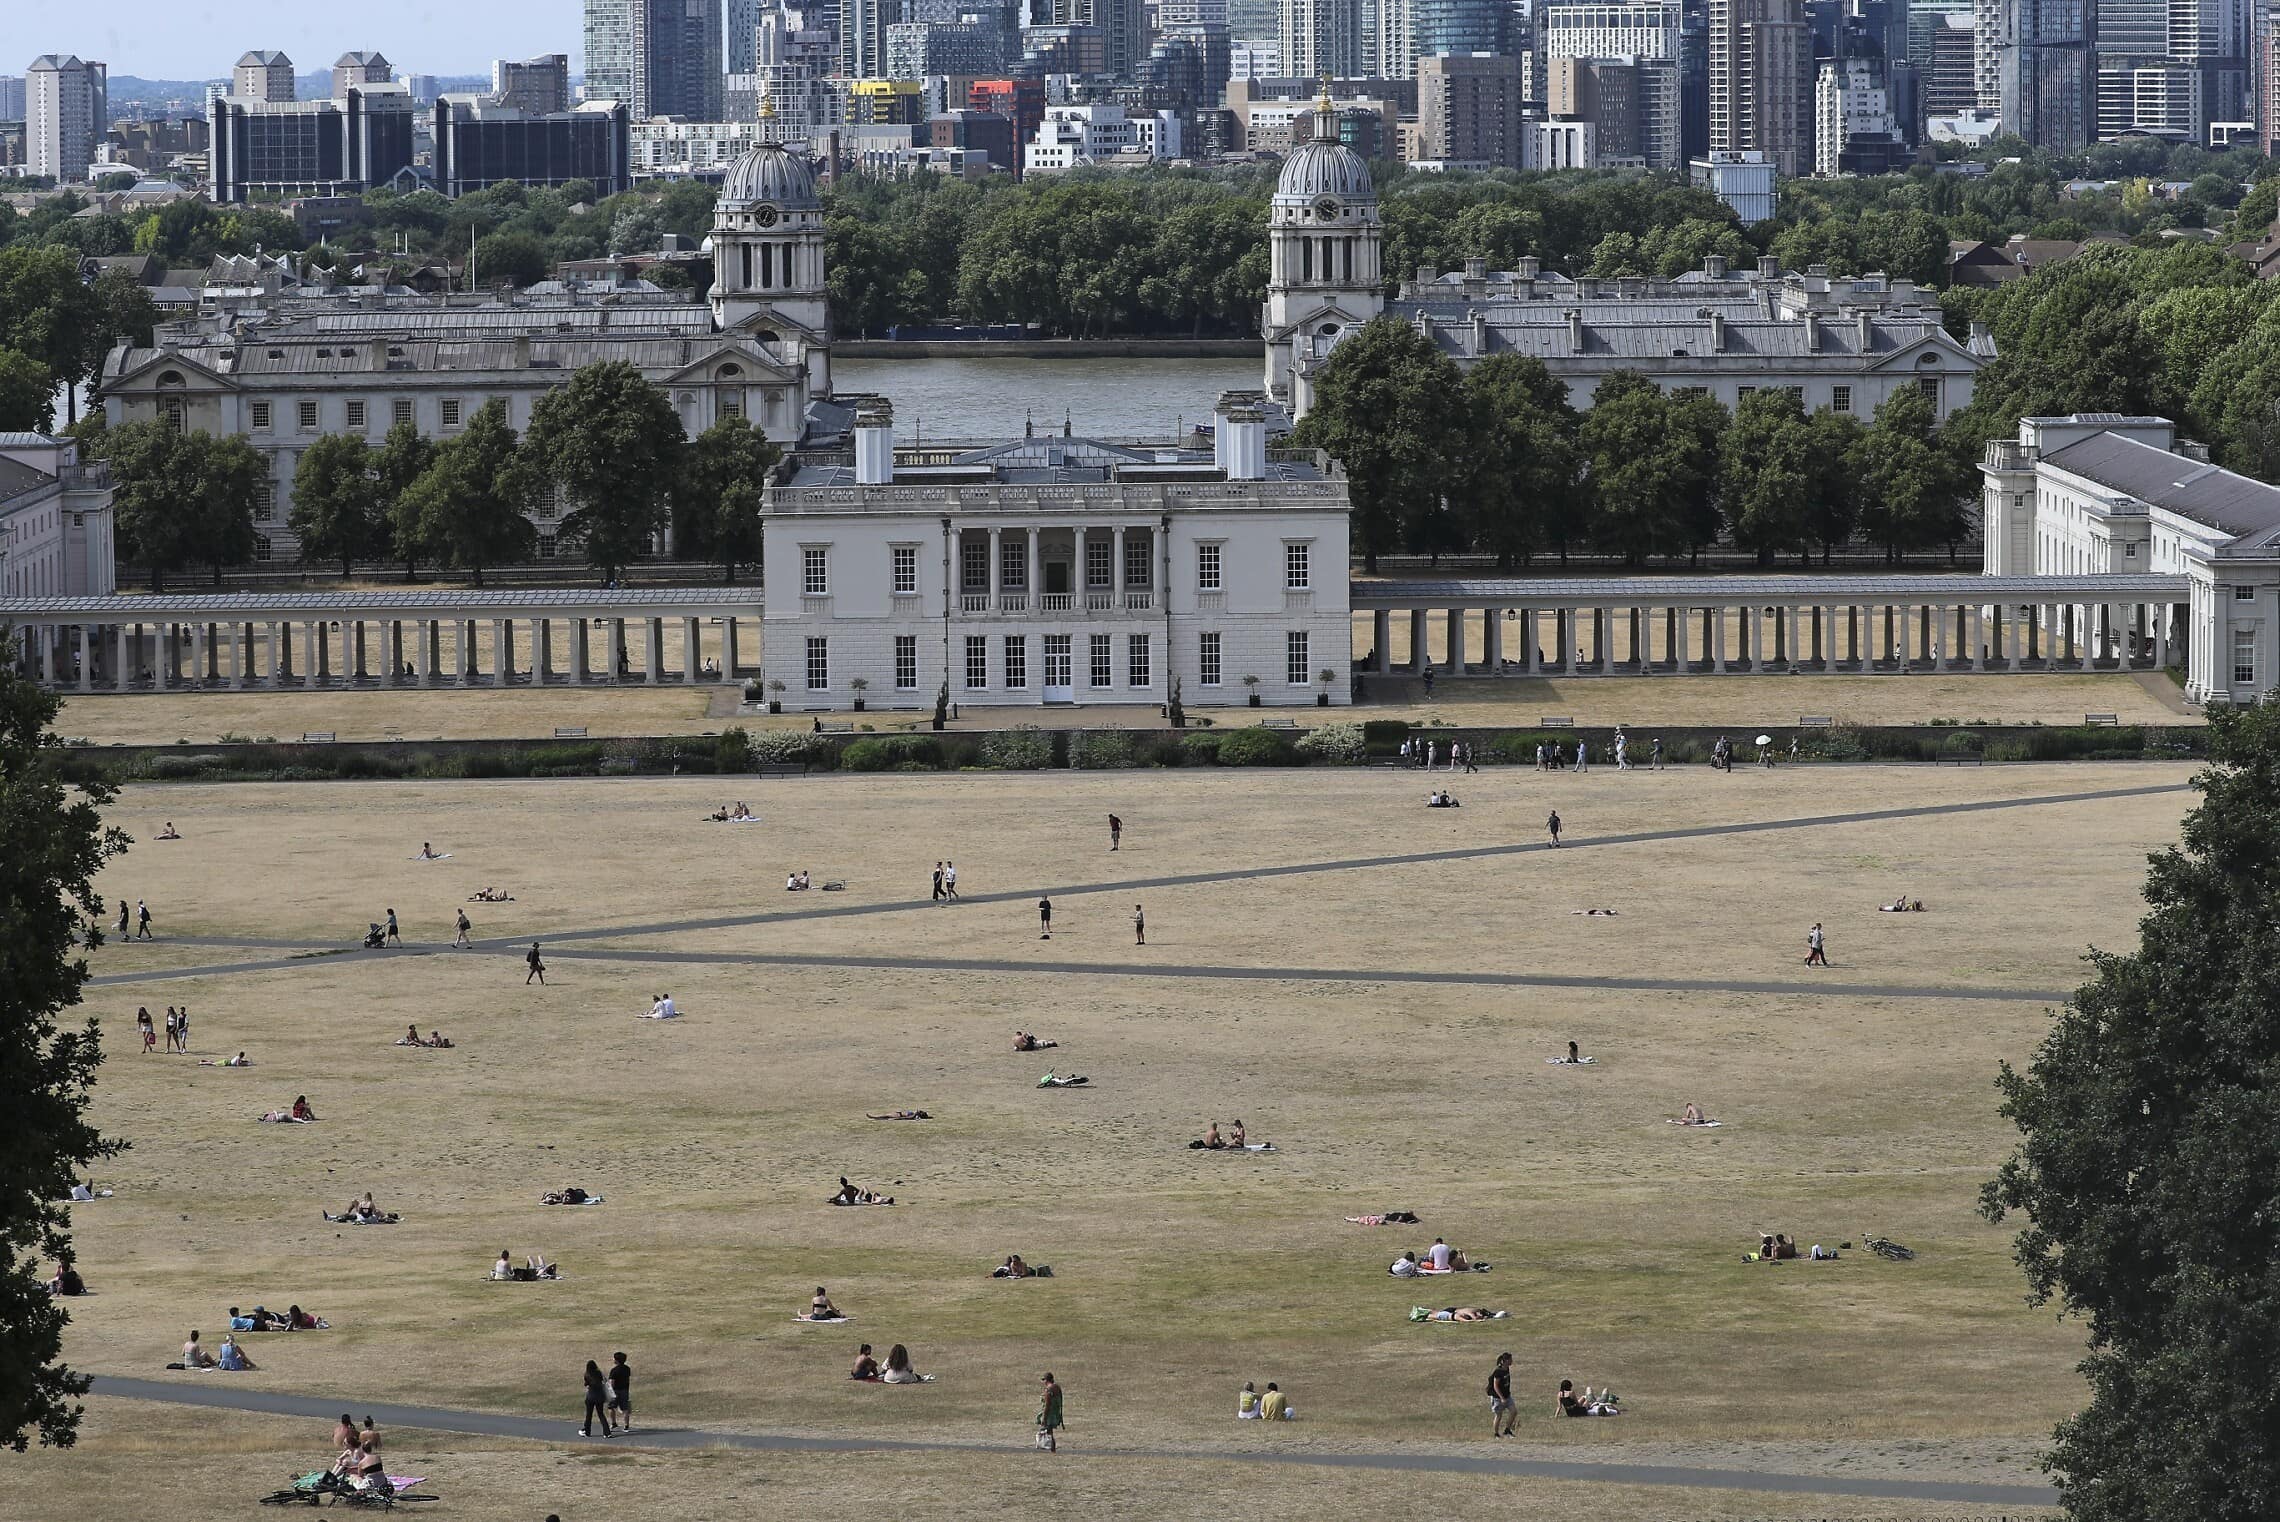 תושבי לונדון רובצים על המדשאות בפארק גריניץ&#039;, 17 ביולי 2022 (צילום: AP Photo/Tony Hicks)